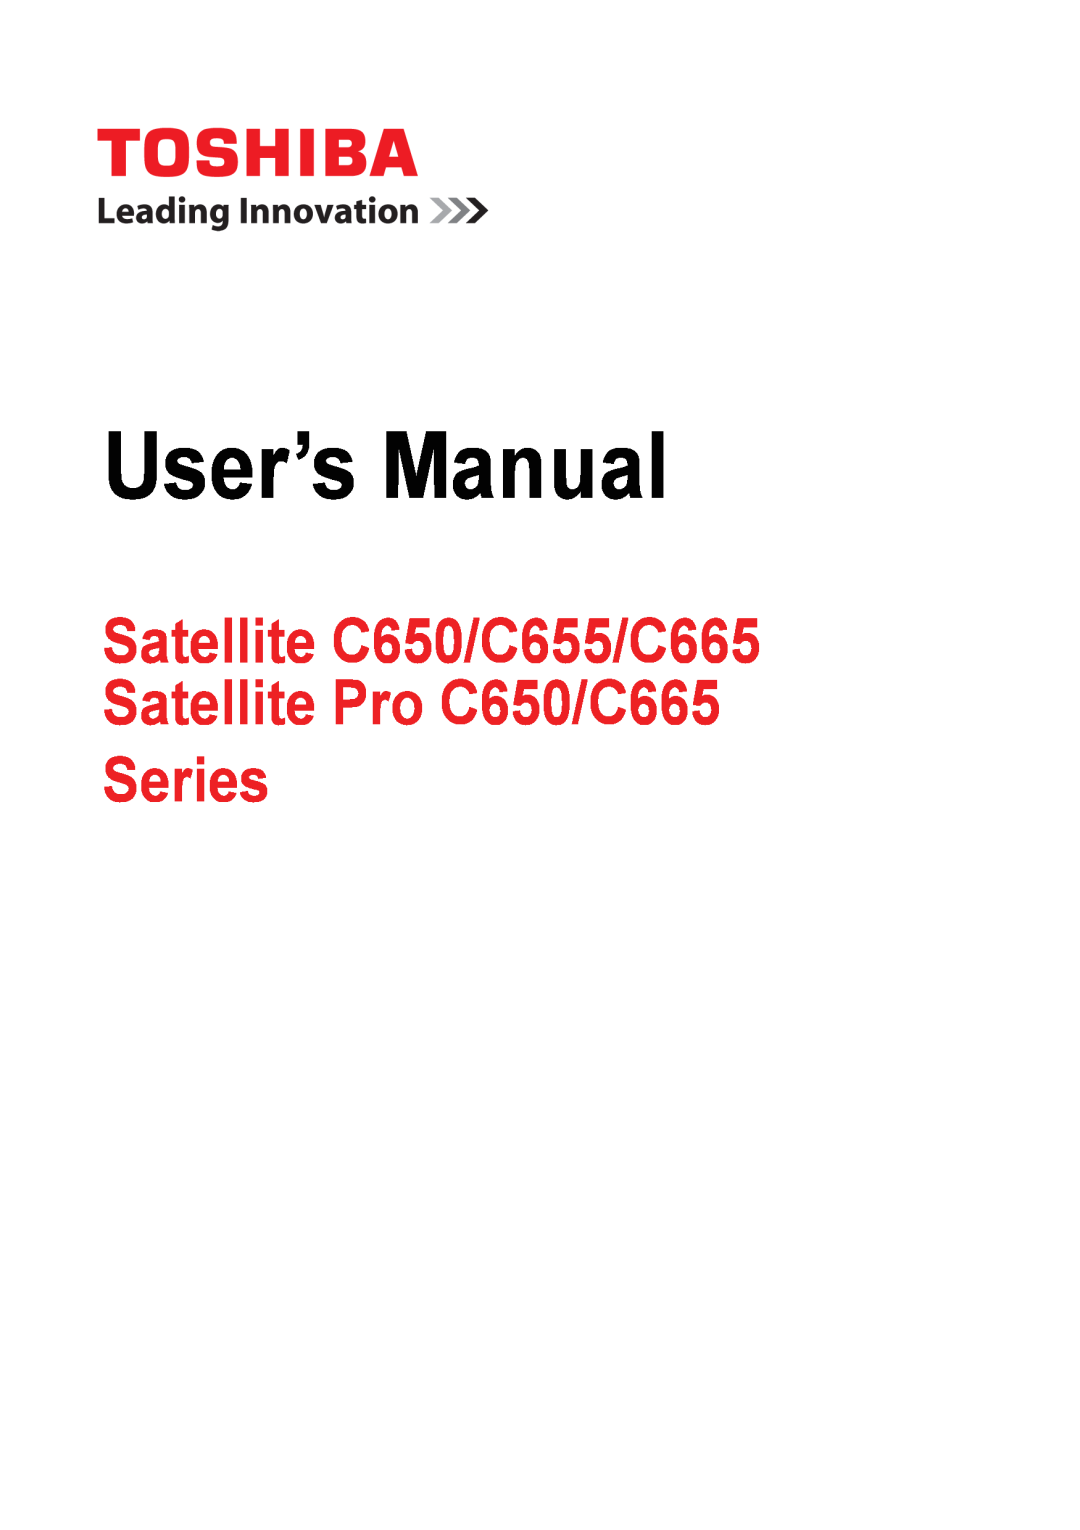 Toshiba PSC08U-02D01D user manual User’s Manual, Satellite C650/C655/C665 Satellite Pro C650/C665 Series 